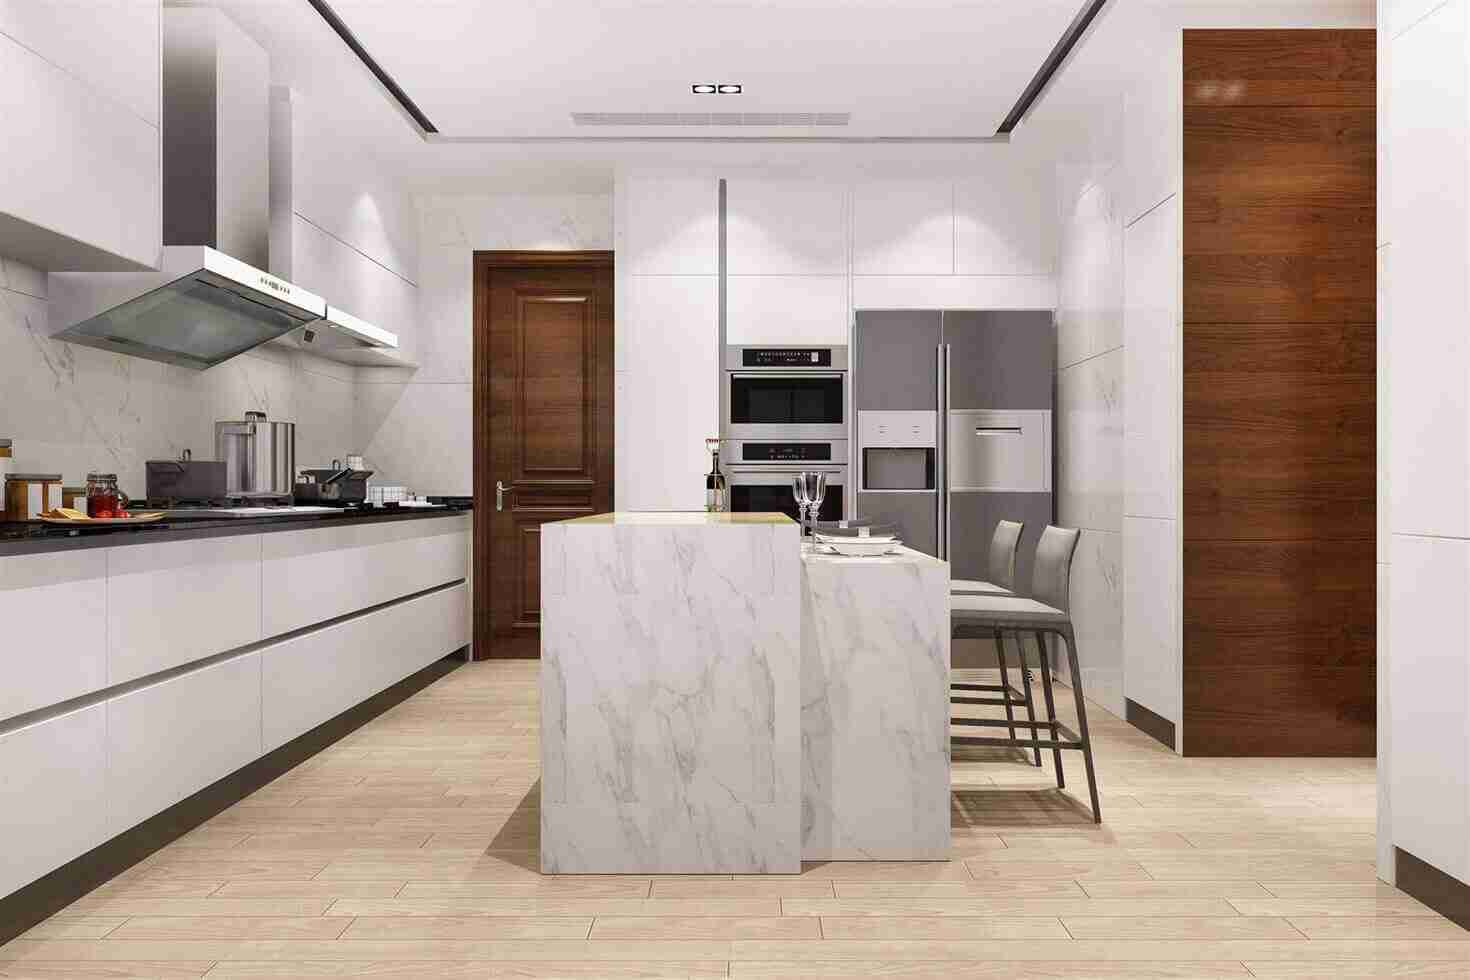 Modular kitchen Designs